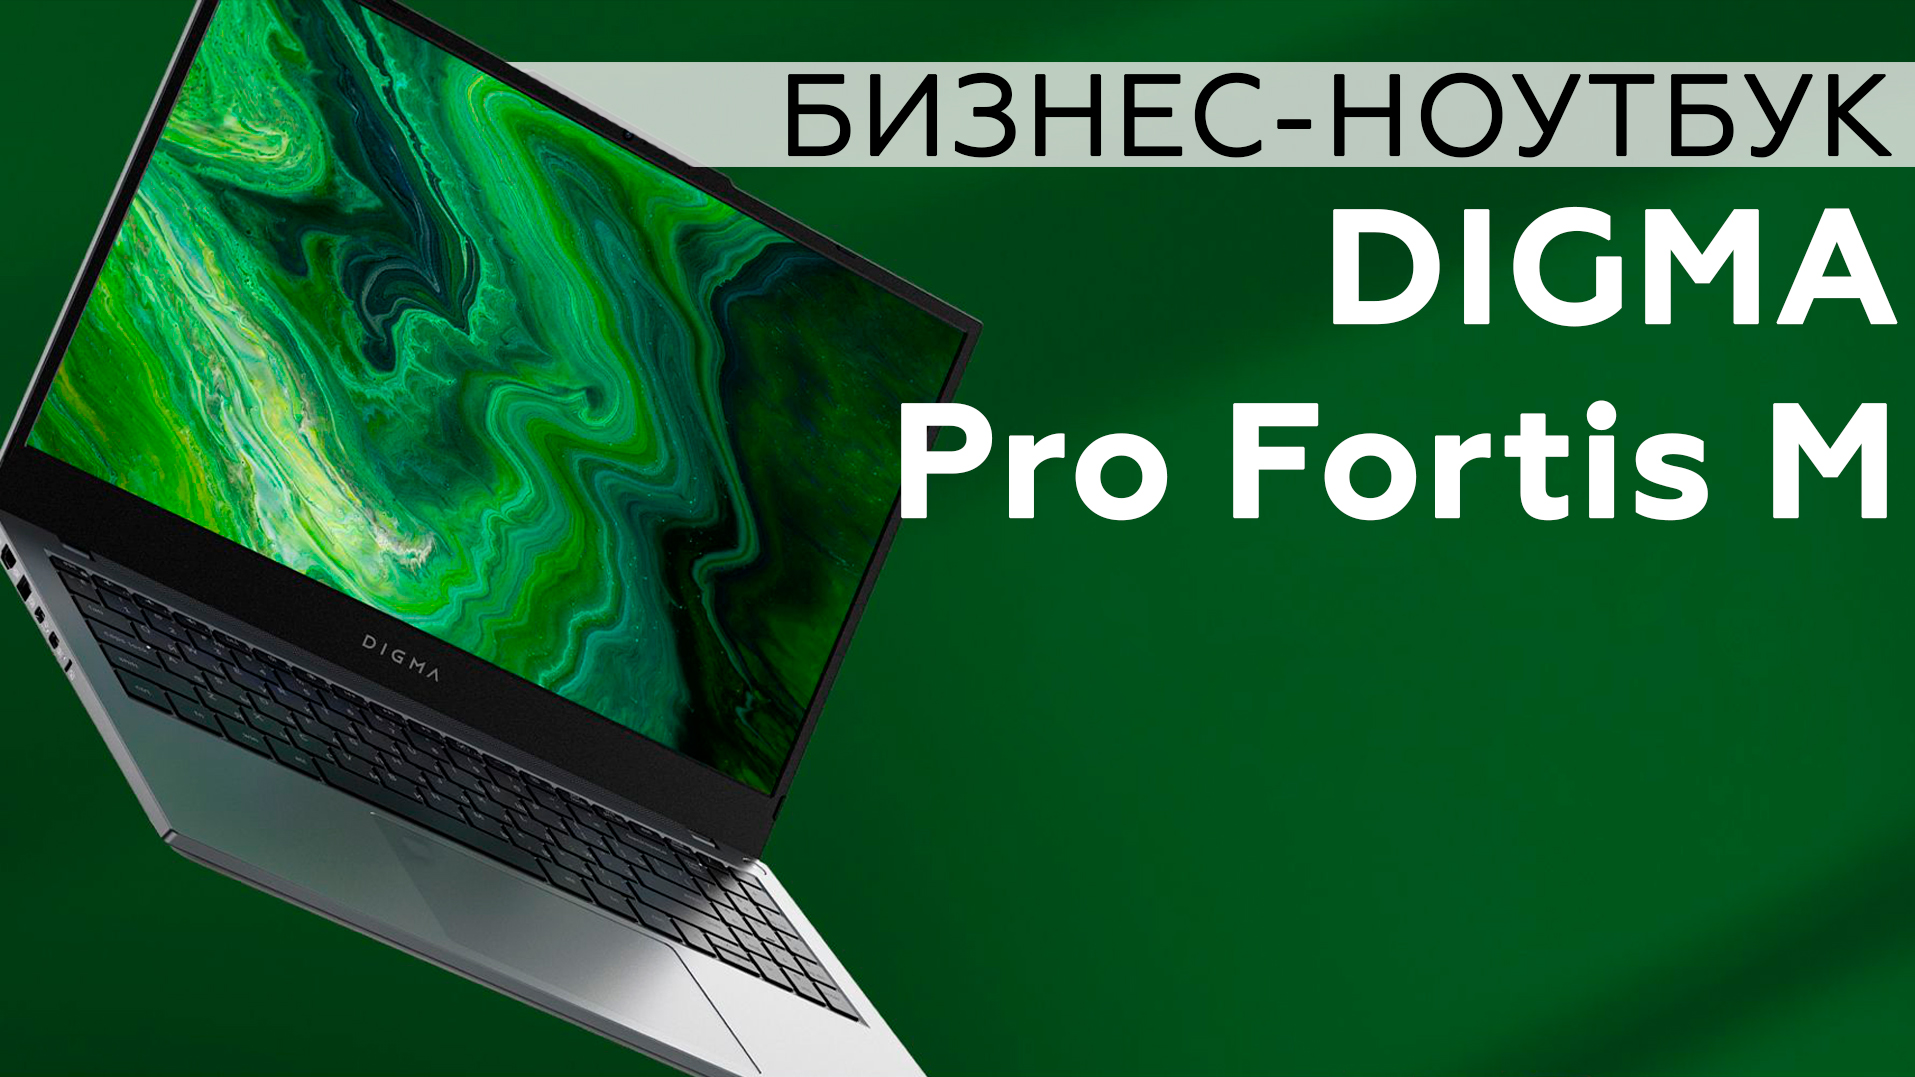 Обзор бизнес-ноутбука Digma Pro Fortis M на платформе AMD